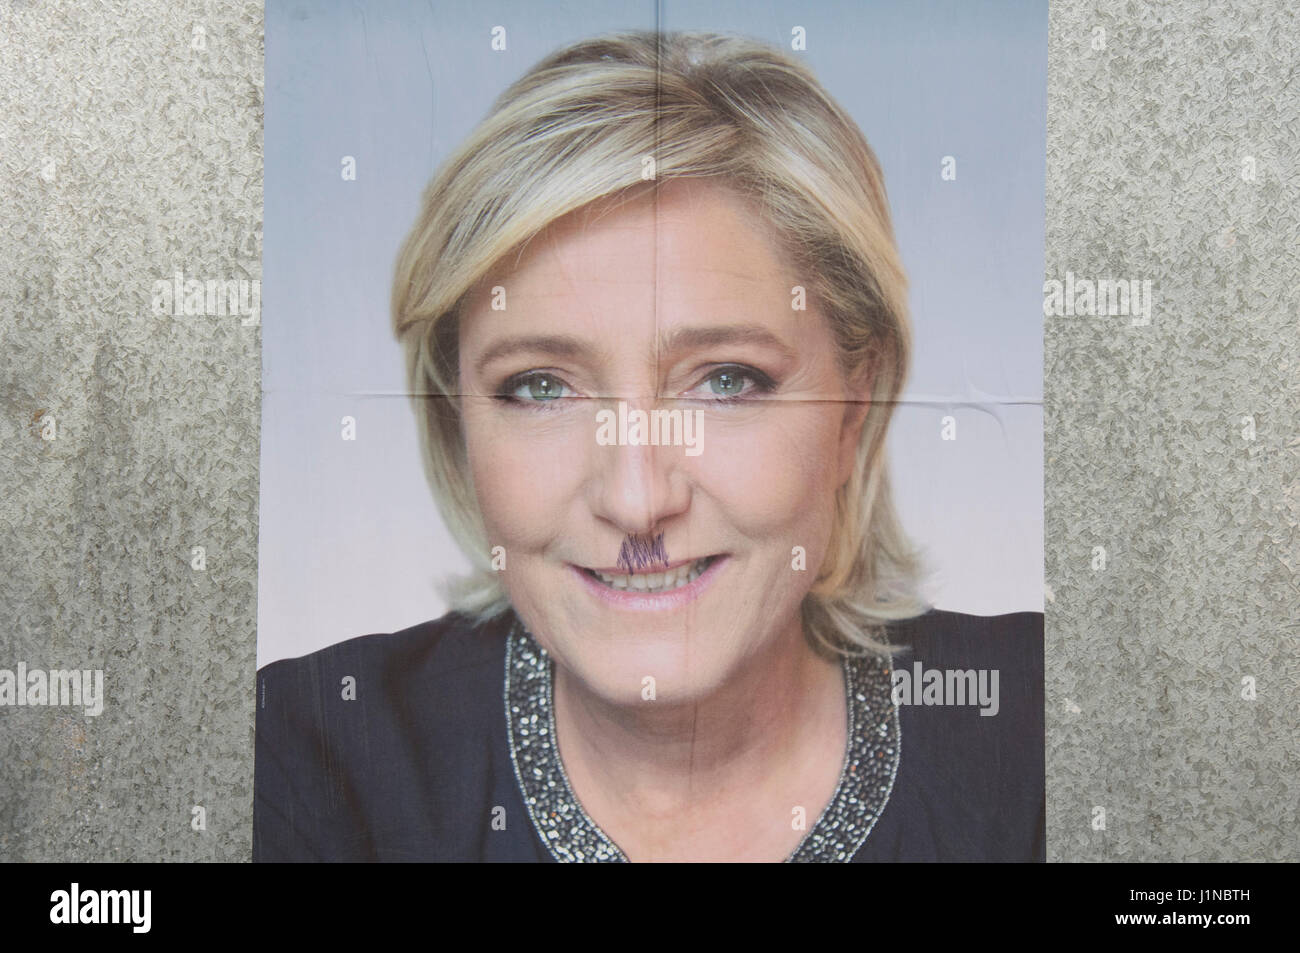 Marine Le Pen, Führer der Front National. Wahlplakat entstellt durch die Zugabe von Hitler Schnurrbart. Französische Präsidenten Wahlen 2017. Frankreich Stockfoto